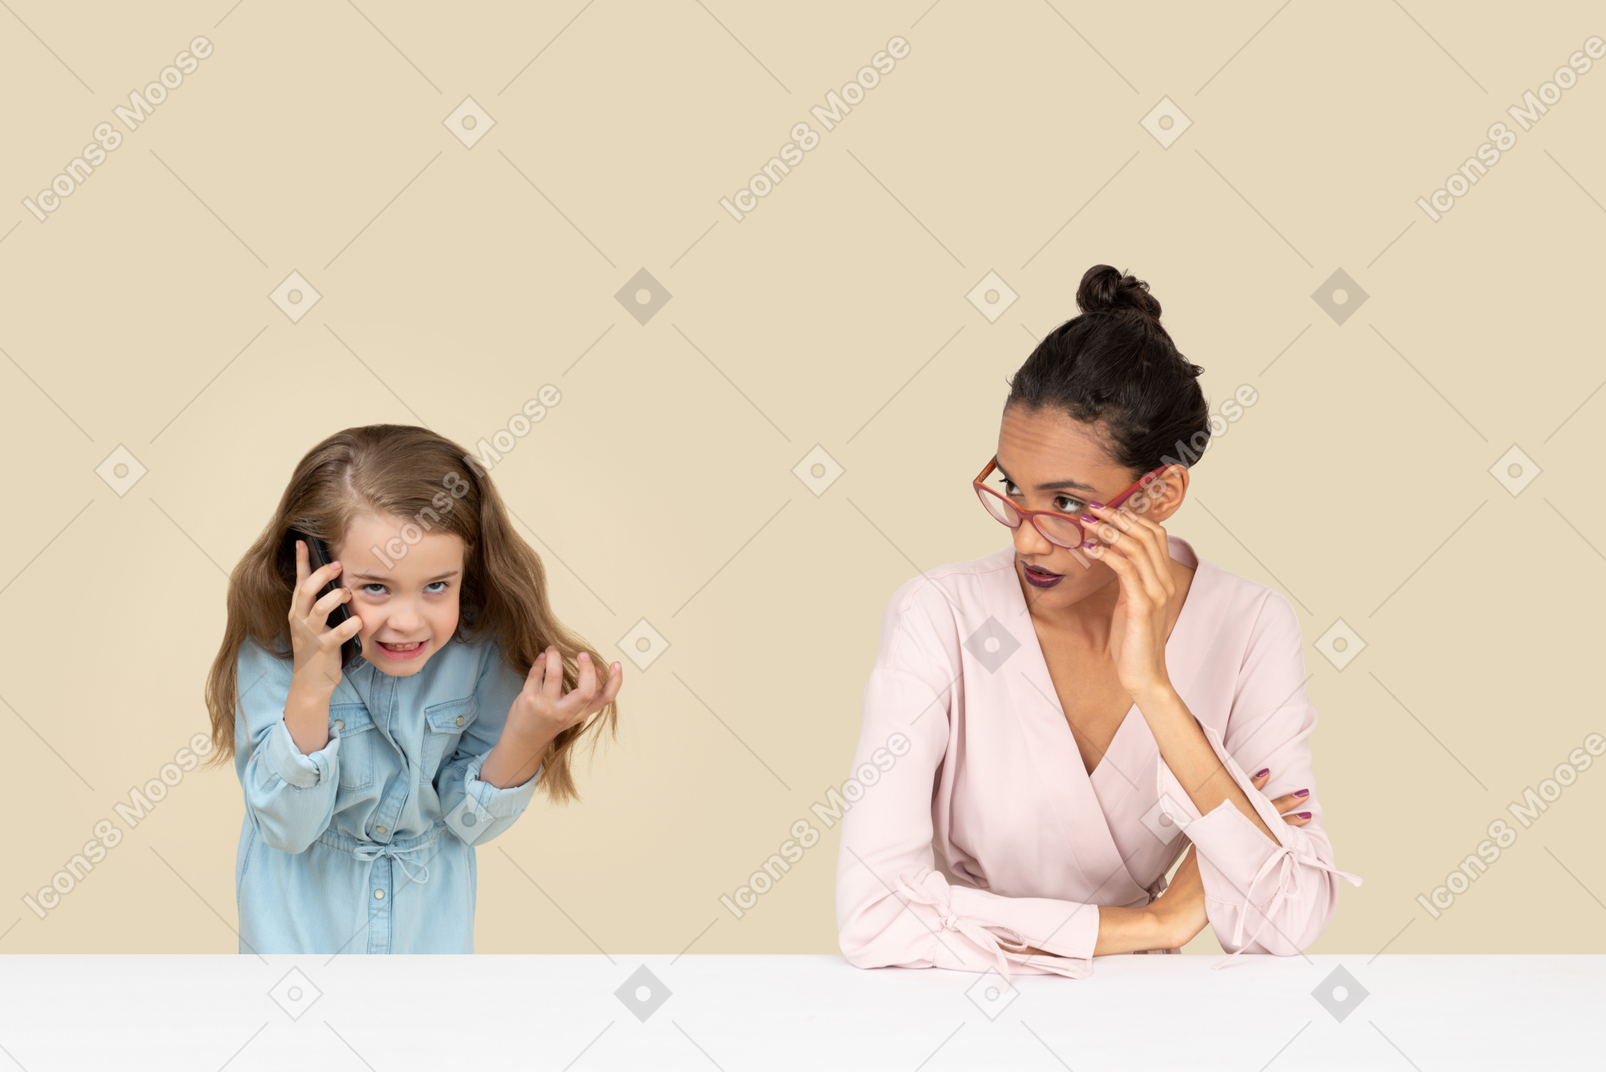 Mamá mirando atentamente a su hija irritada hablando por teléfono